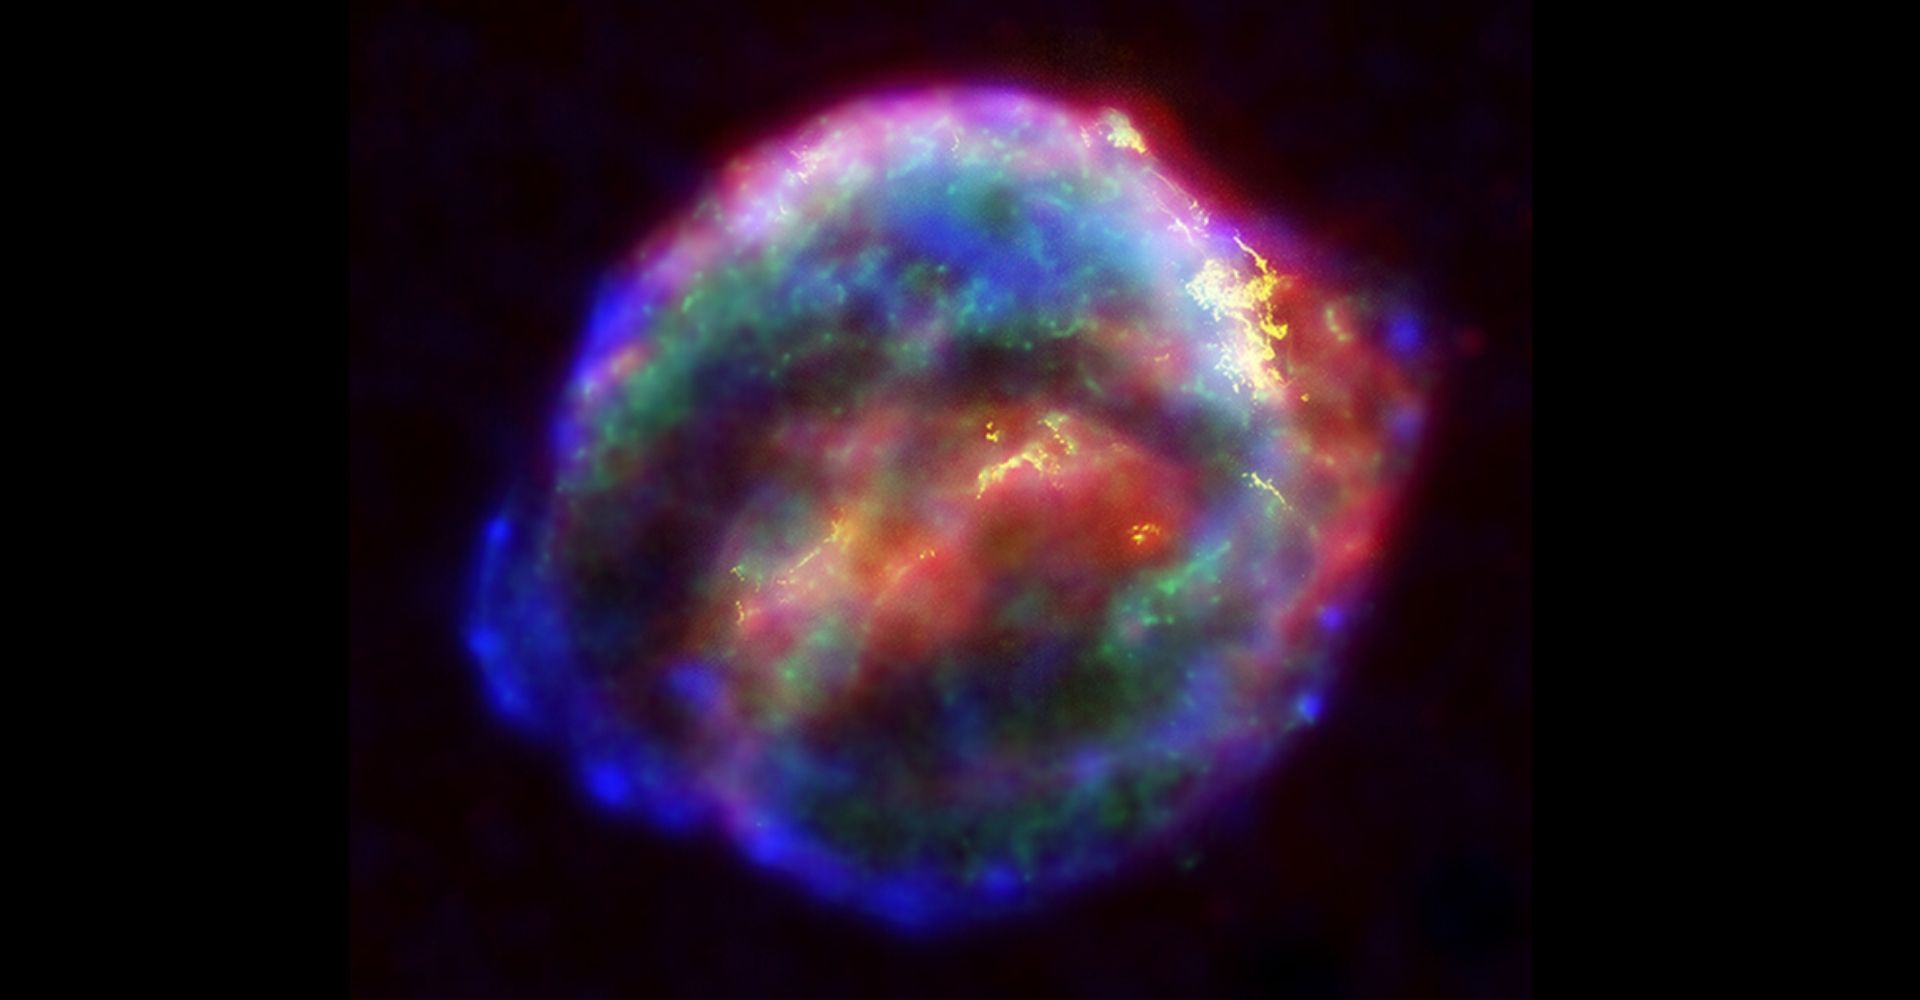 Kepler's supernova